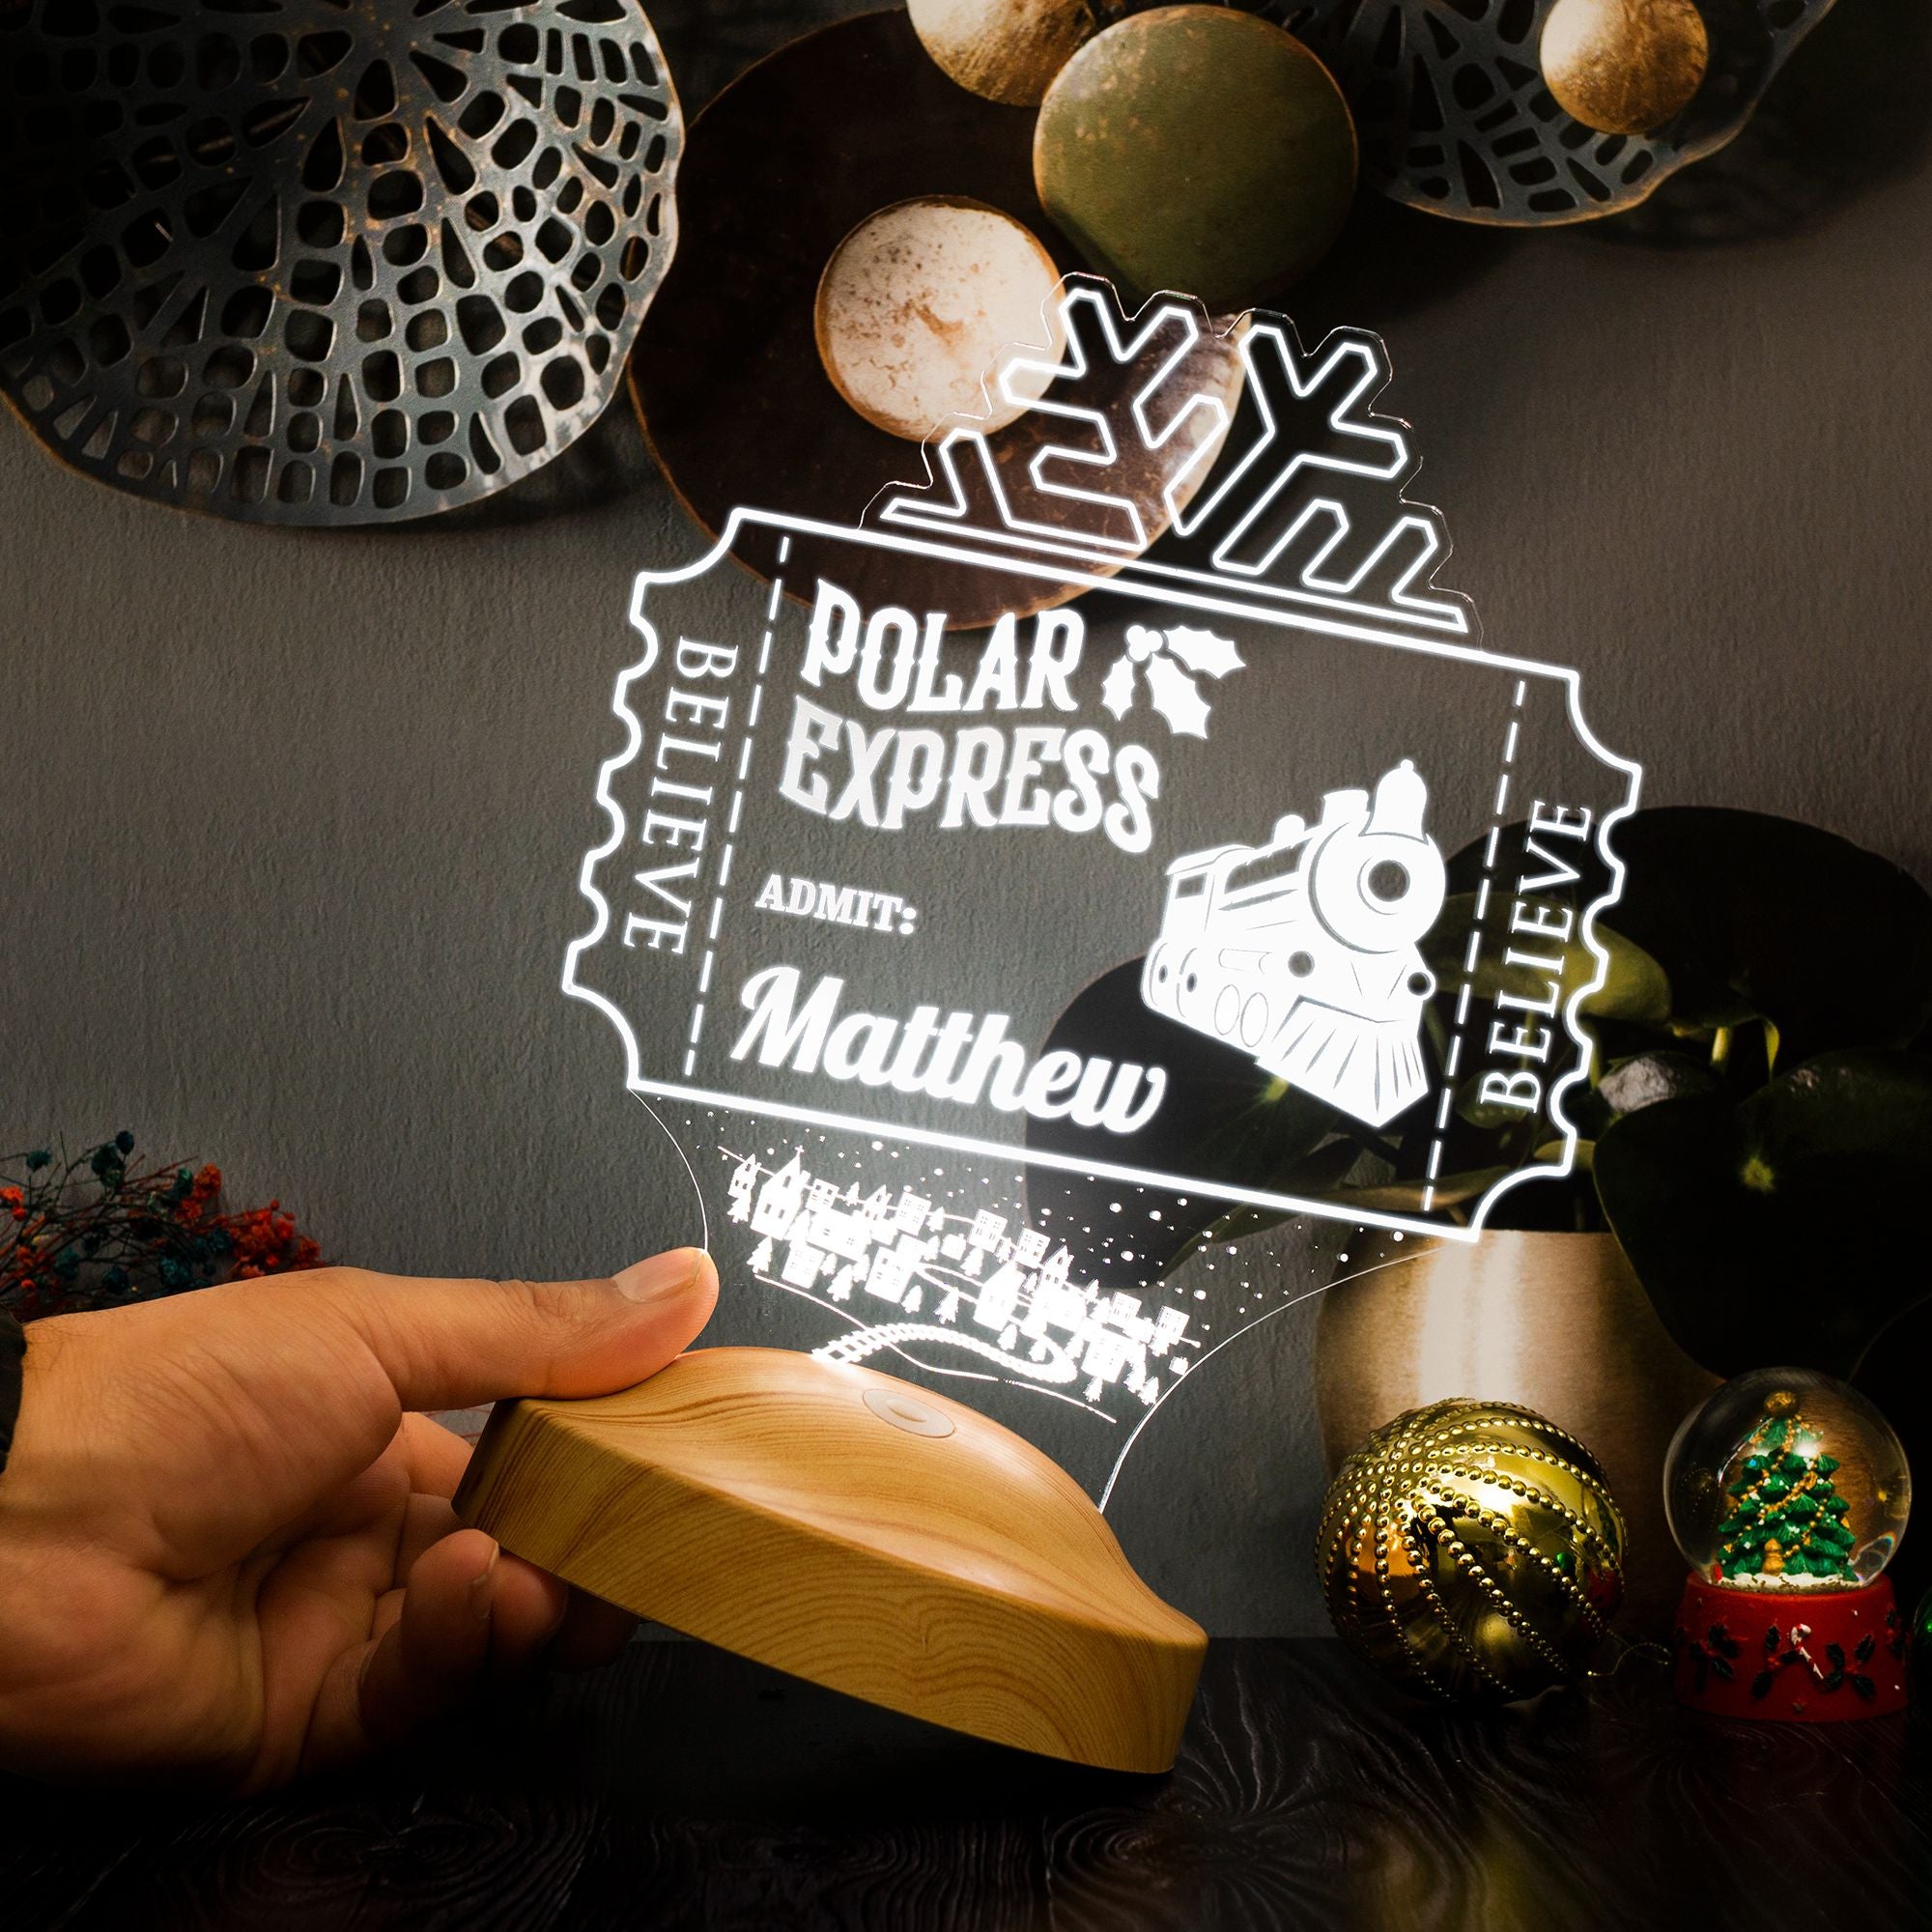 Polarexpress Weichnactsgeschenk Personalisierte Lampe Mit Gravur